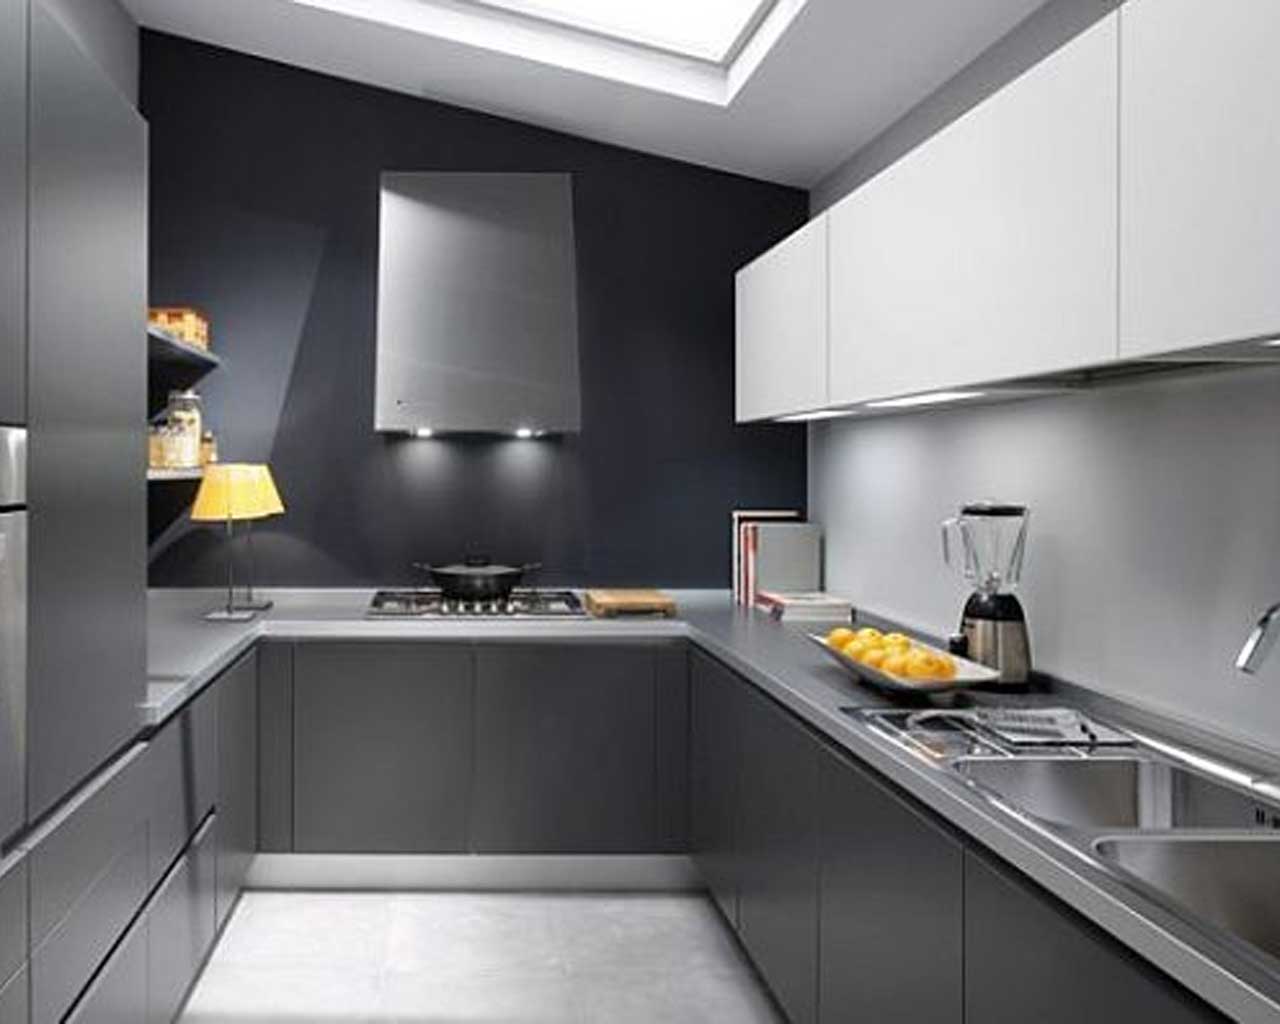 Minimalist Galley Kitchen Idea - Minimal Grey Kitchen Design - HD Wallpaper 